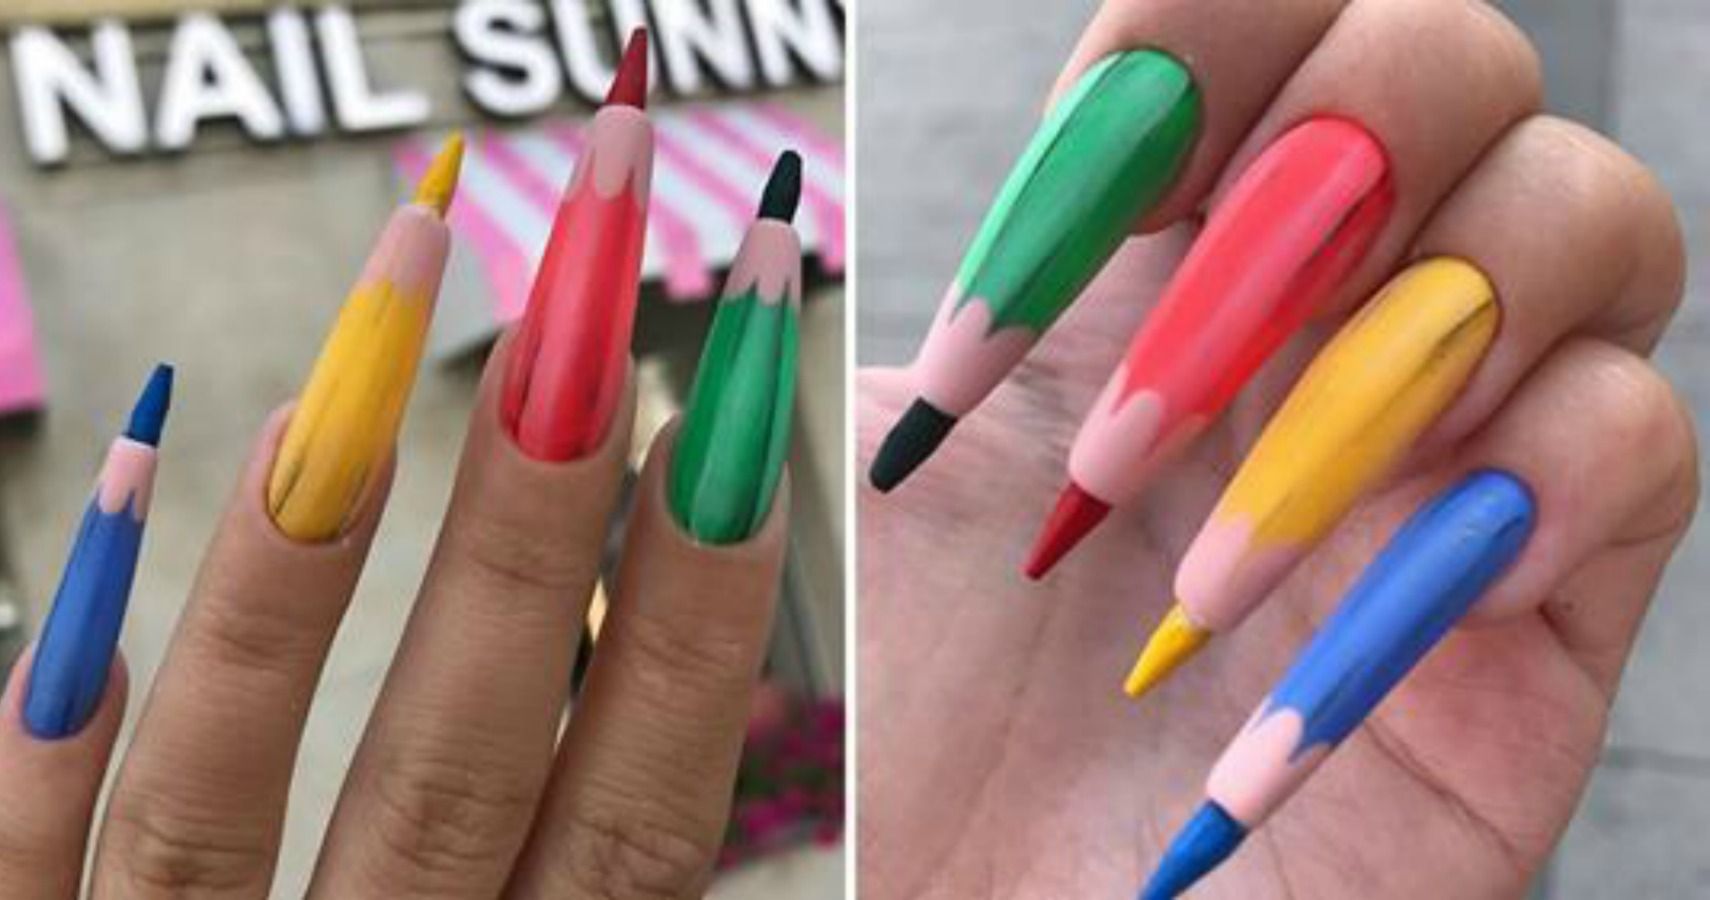 nail sunny pencil crayon nails